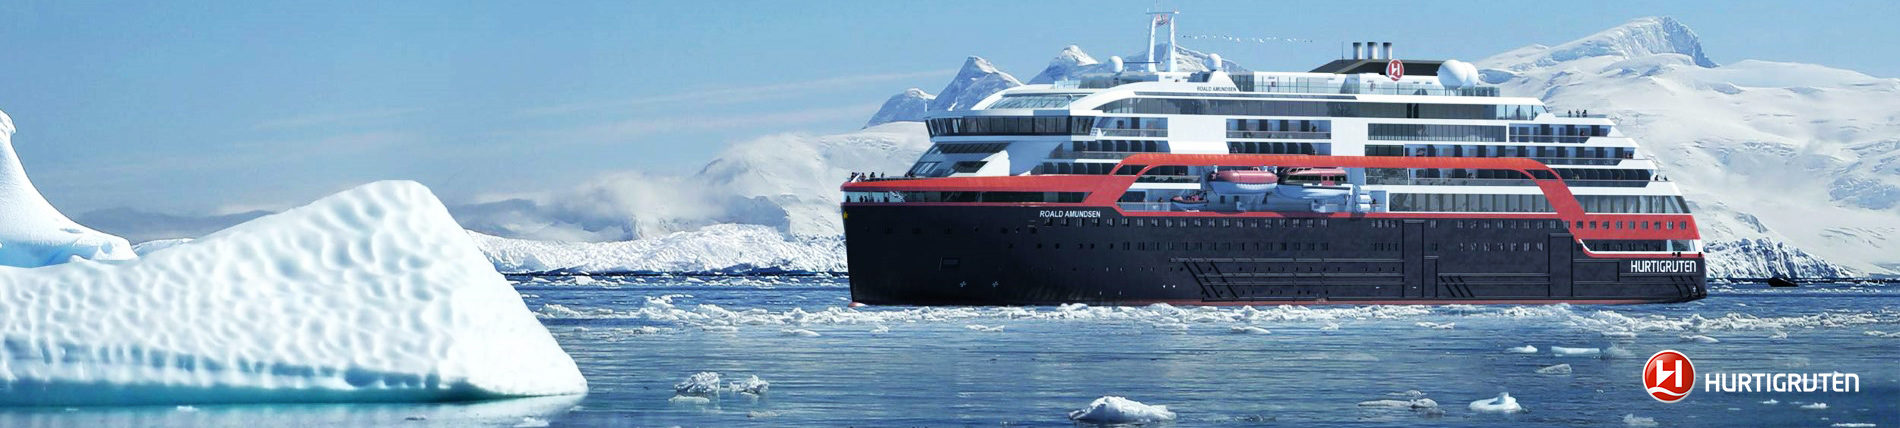 Už za pár týdnů vypluje na Antarktidu první výletní loď s hybridním pohonem, kmotrou jí bude známá polárnice